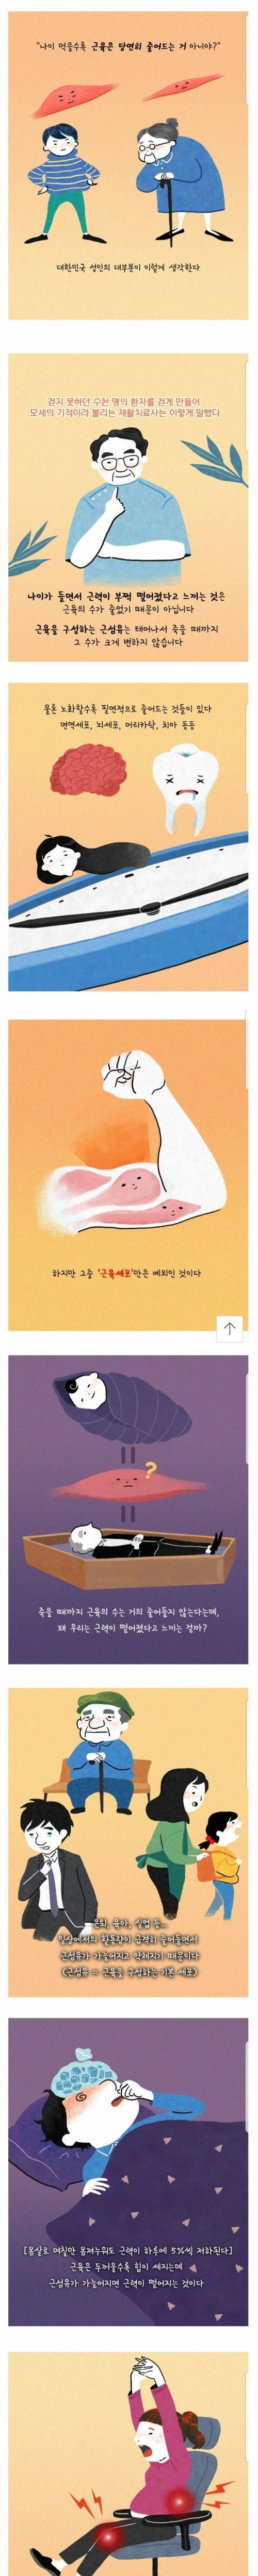 [스압] 대한민국 성인의 대부분 잘못 알고있는 건강상식.jpg